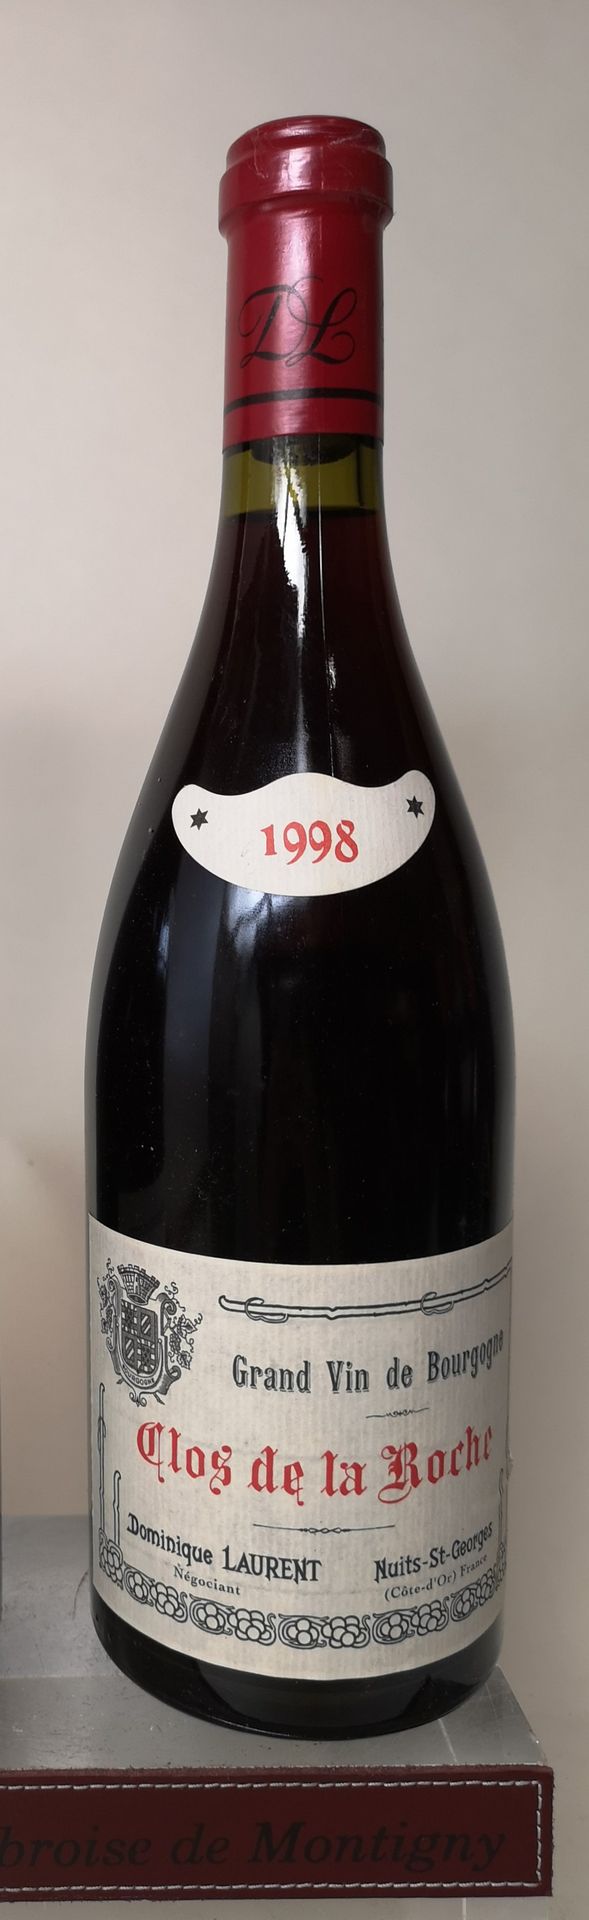 Null 
1 botella CLOS de la ROCHE Grand cru - Dominique LAURENT 1998

LOTE VENDID&hellip;